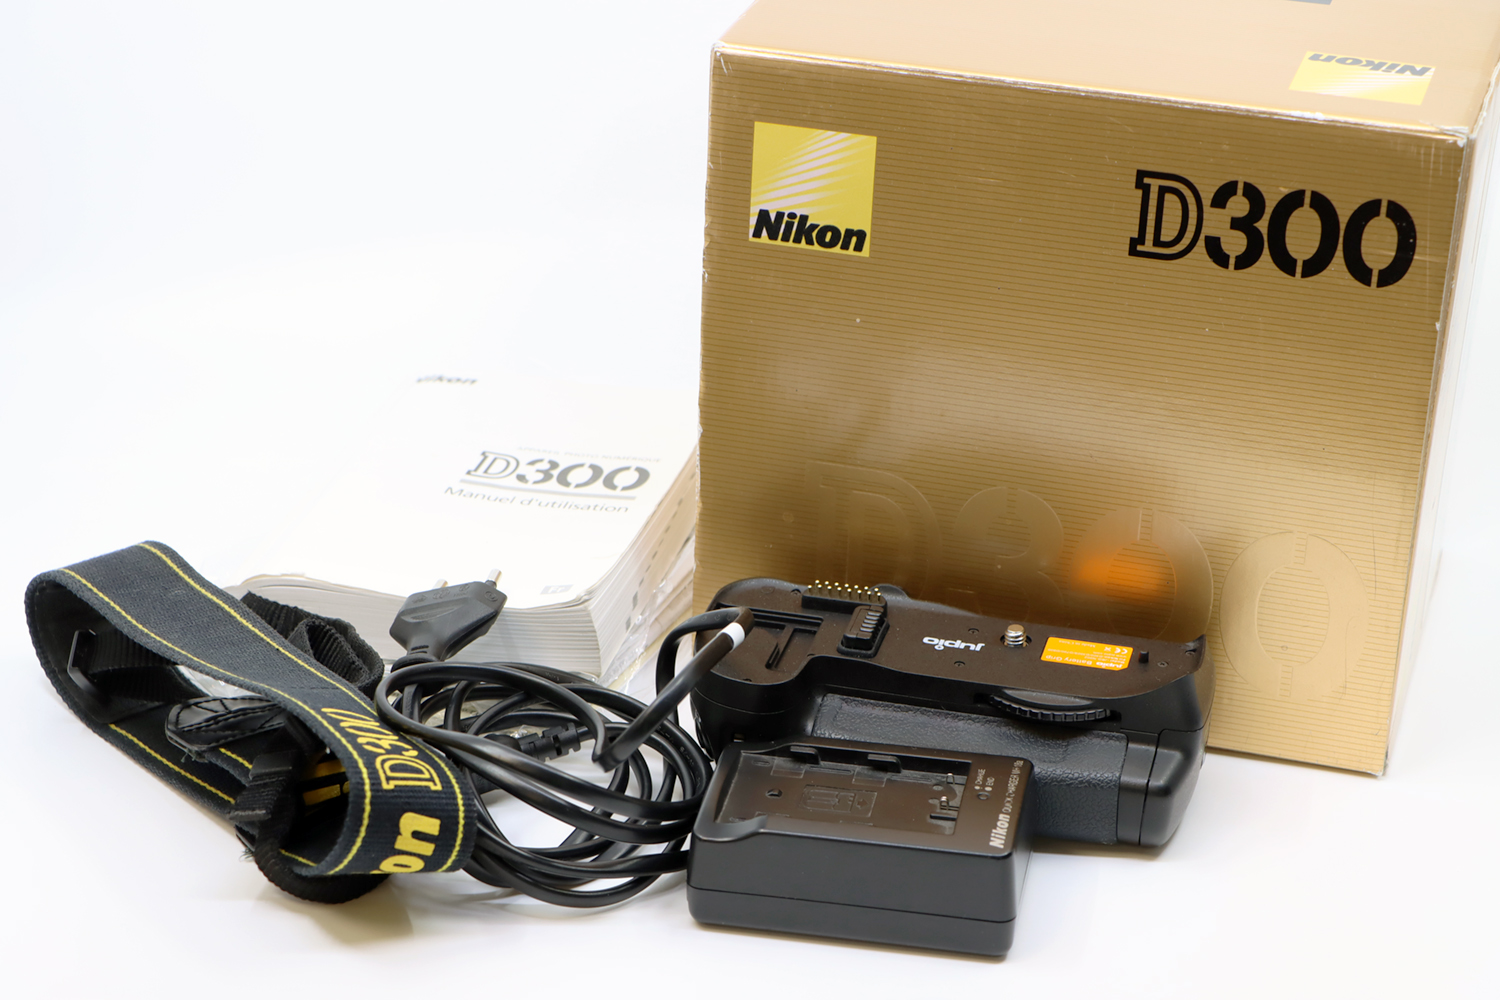 Nikon D300 + Sigma 18-200mm | IMG_6186.JPG